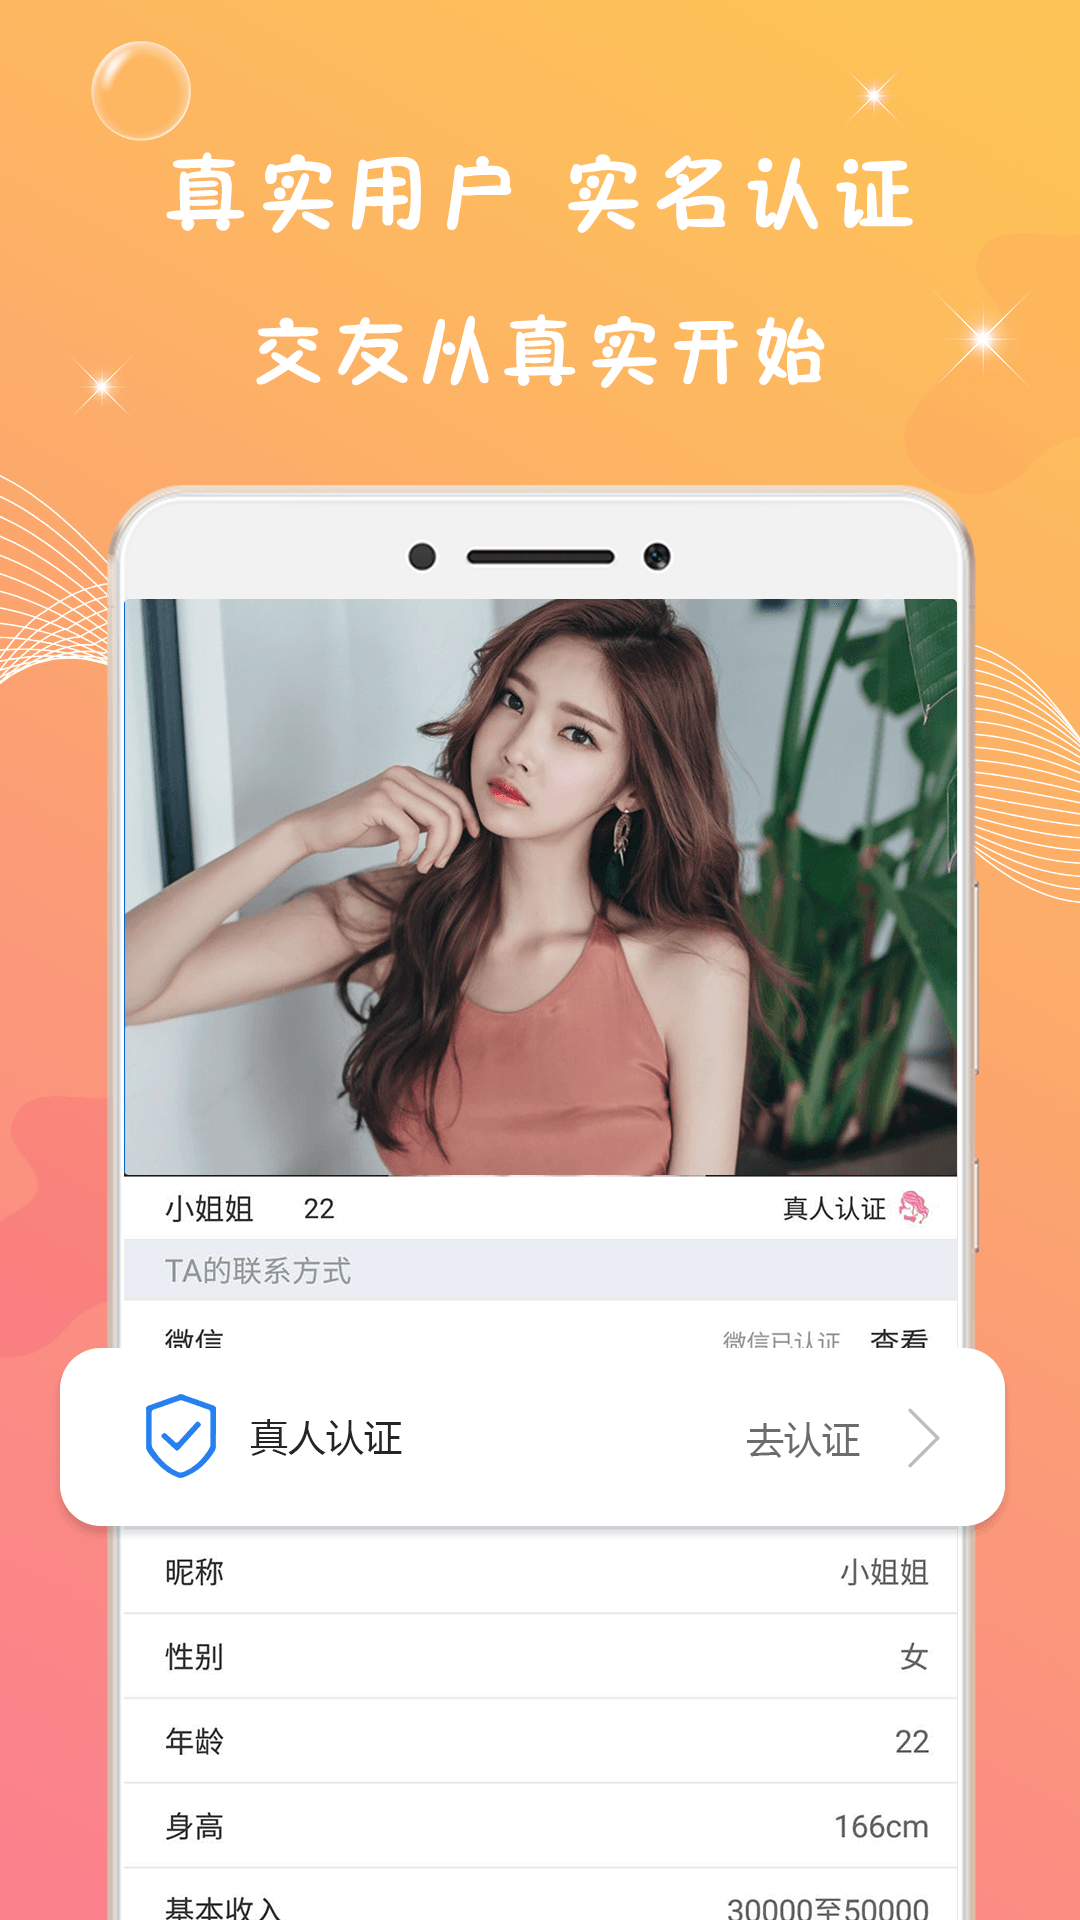 交友约会App - Yueme 约么安卓版应用APK下载